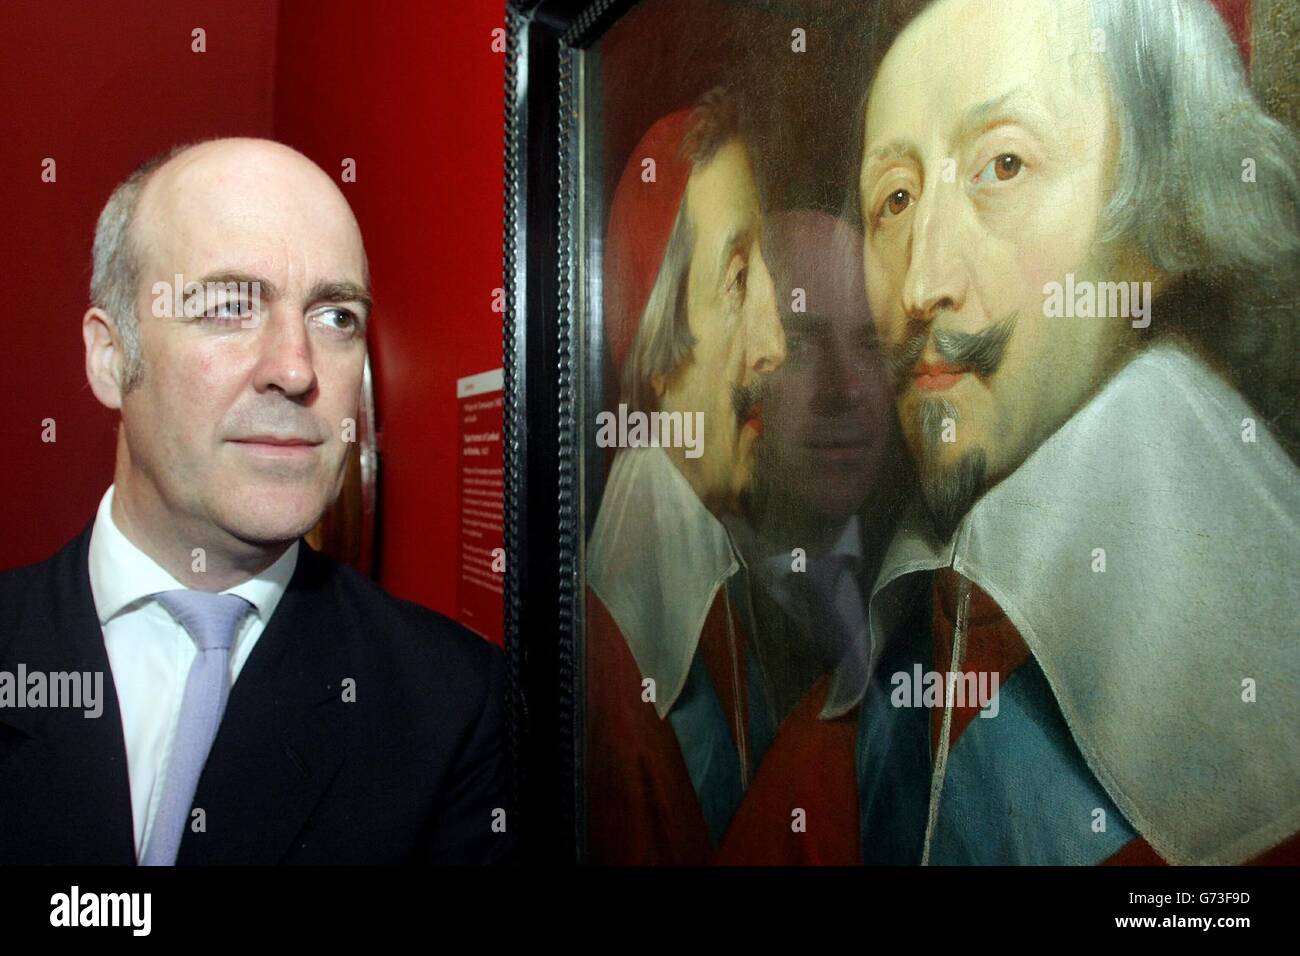 Directeur de la Galerie nationale Charles Saumarez Smith regarde un triple portrait du Cardinal de Richelieu par Philippe de Champaigne, à l'ouverture de l'exposition les visages de fabrication. L'exposition contient 27 œuvres, dont 15 de la collection de la Galerie nationale, d'artistes tels que Cranach, Goya, Renoir et Warhol Banque D'Images